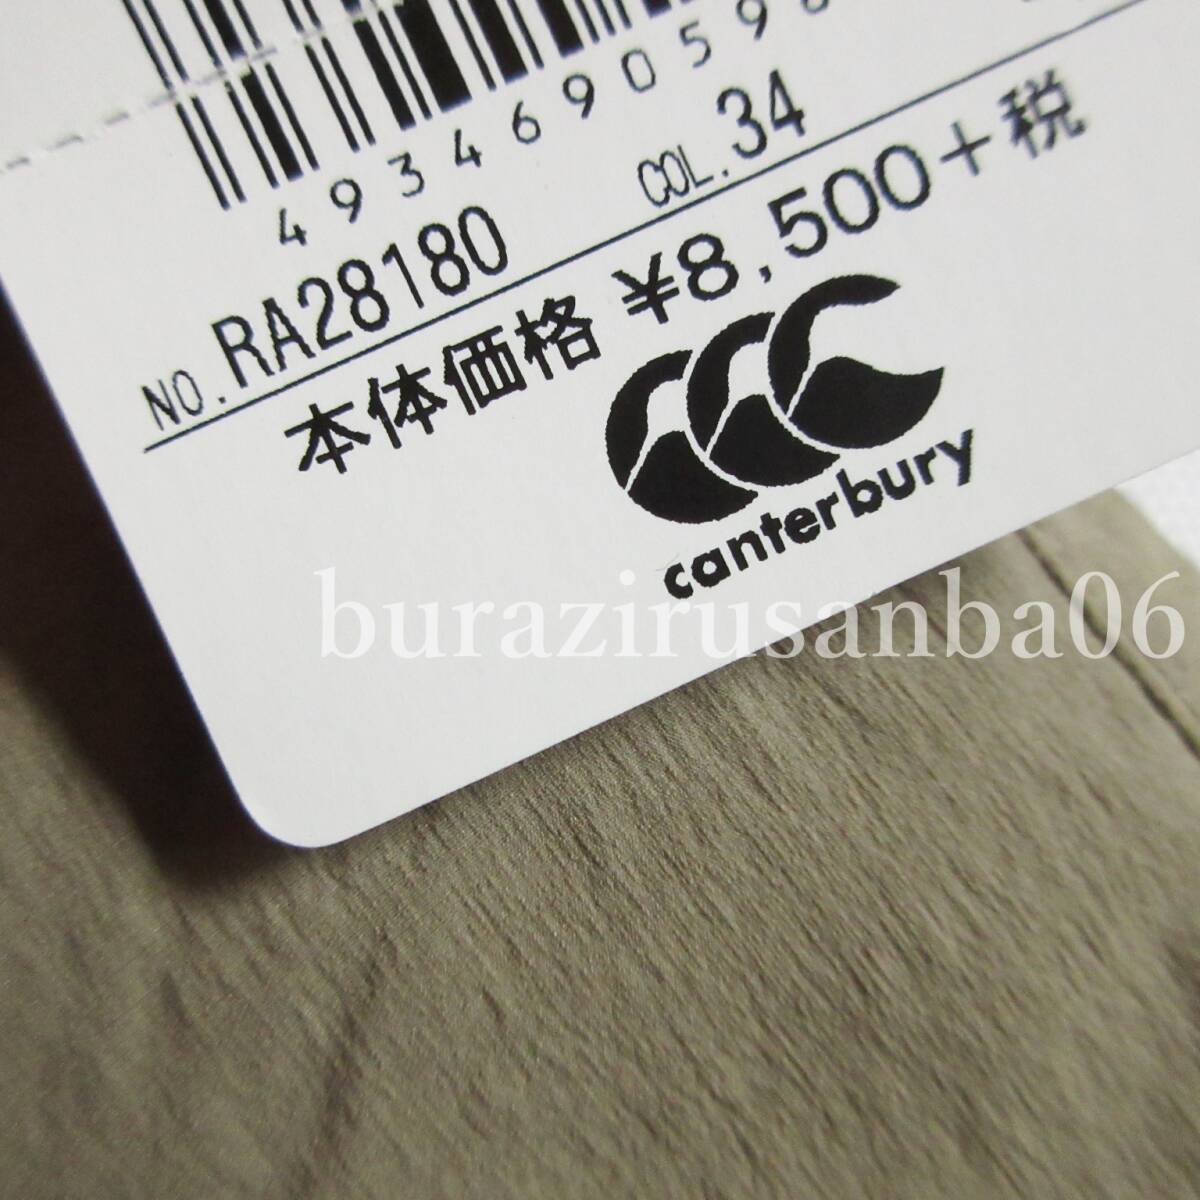  мужской M* не использовался обычная цена 9,350 иен canterbury canterbury pa Cub ru стрейч шорты шорты выносливость водоотталкивающая отделка RA28180 хаки 